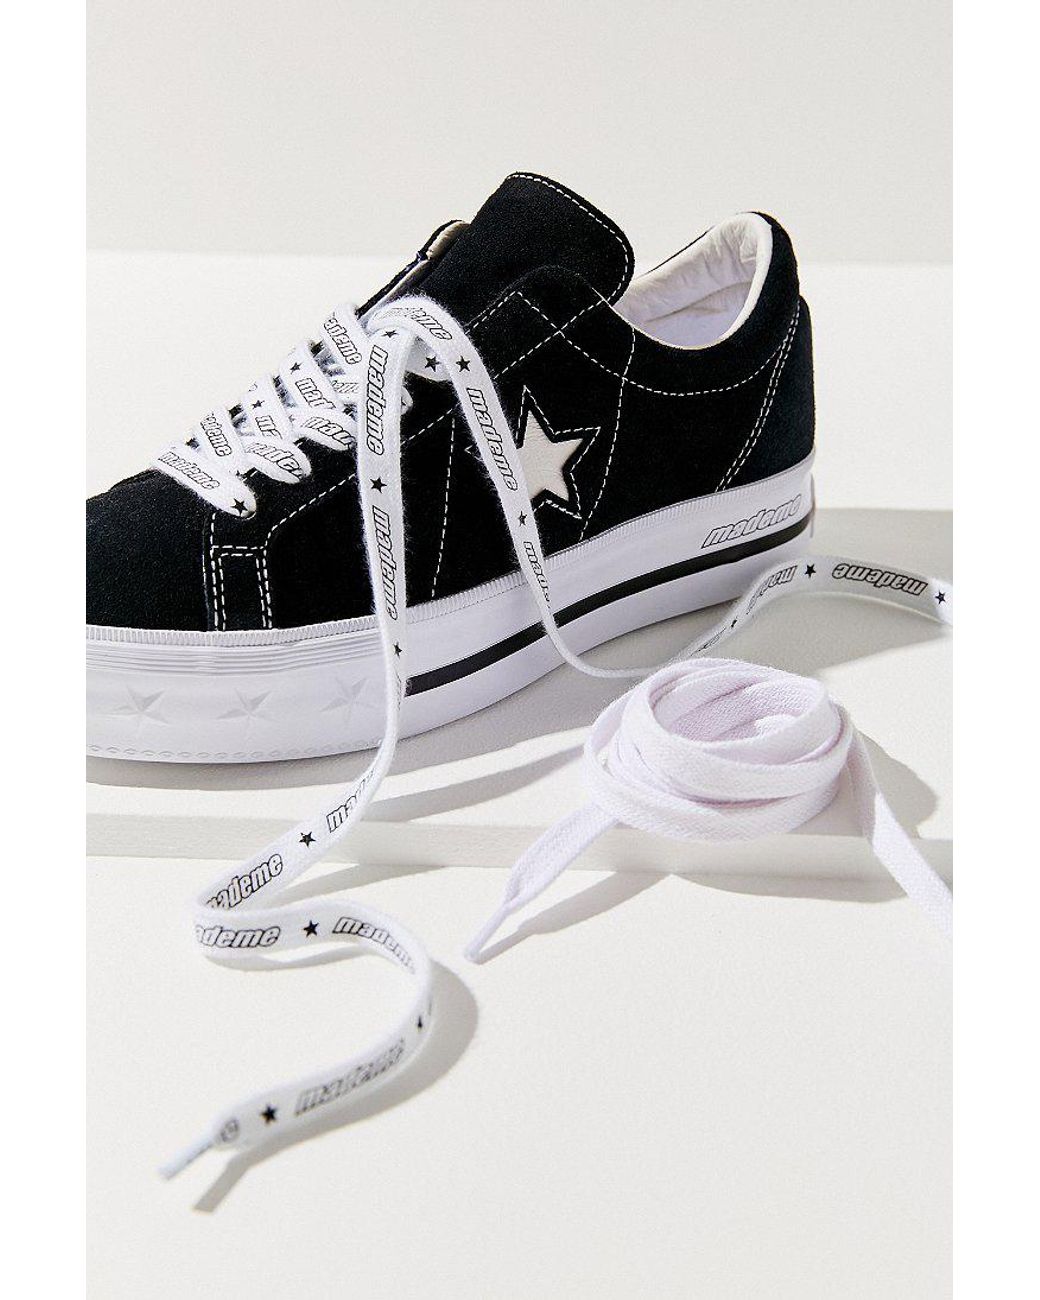 مائل جورج برنارد طبق womens converse x mademe one star platform black white  shoes - porcovision.com